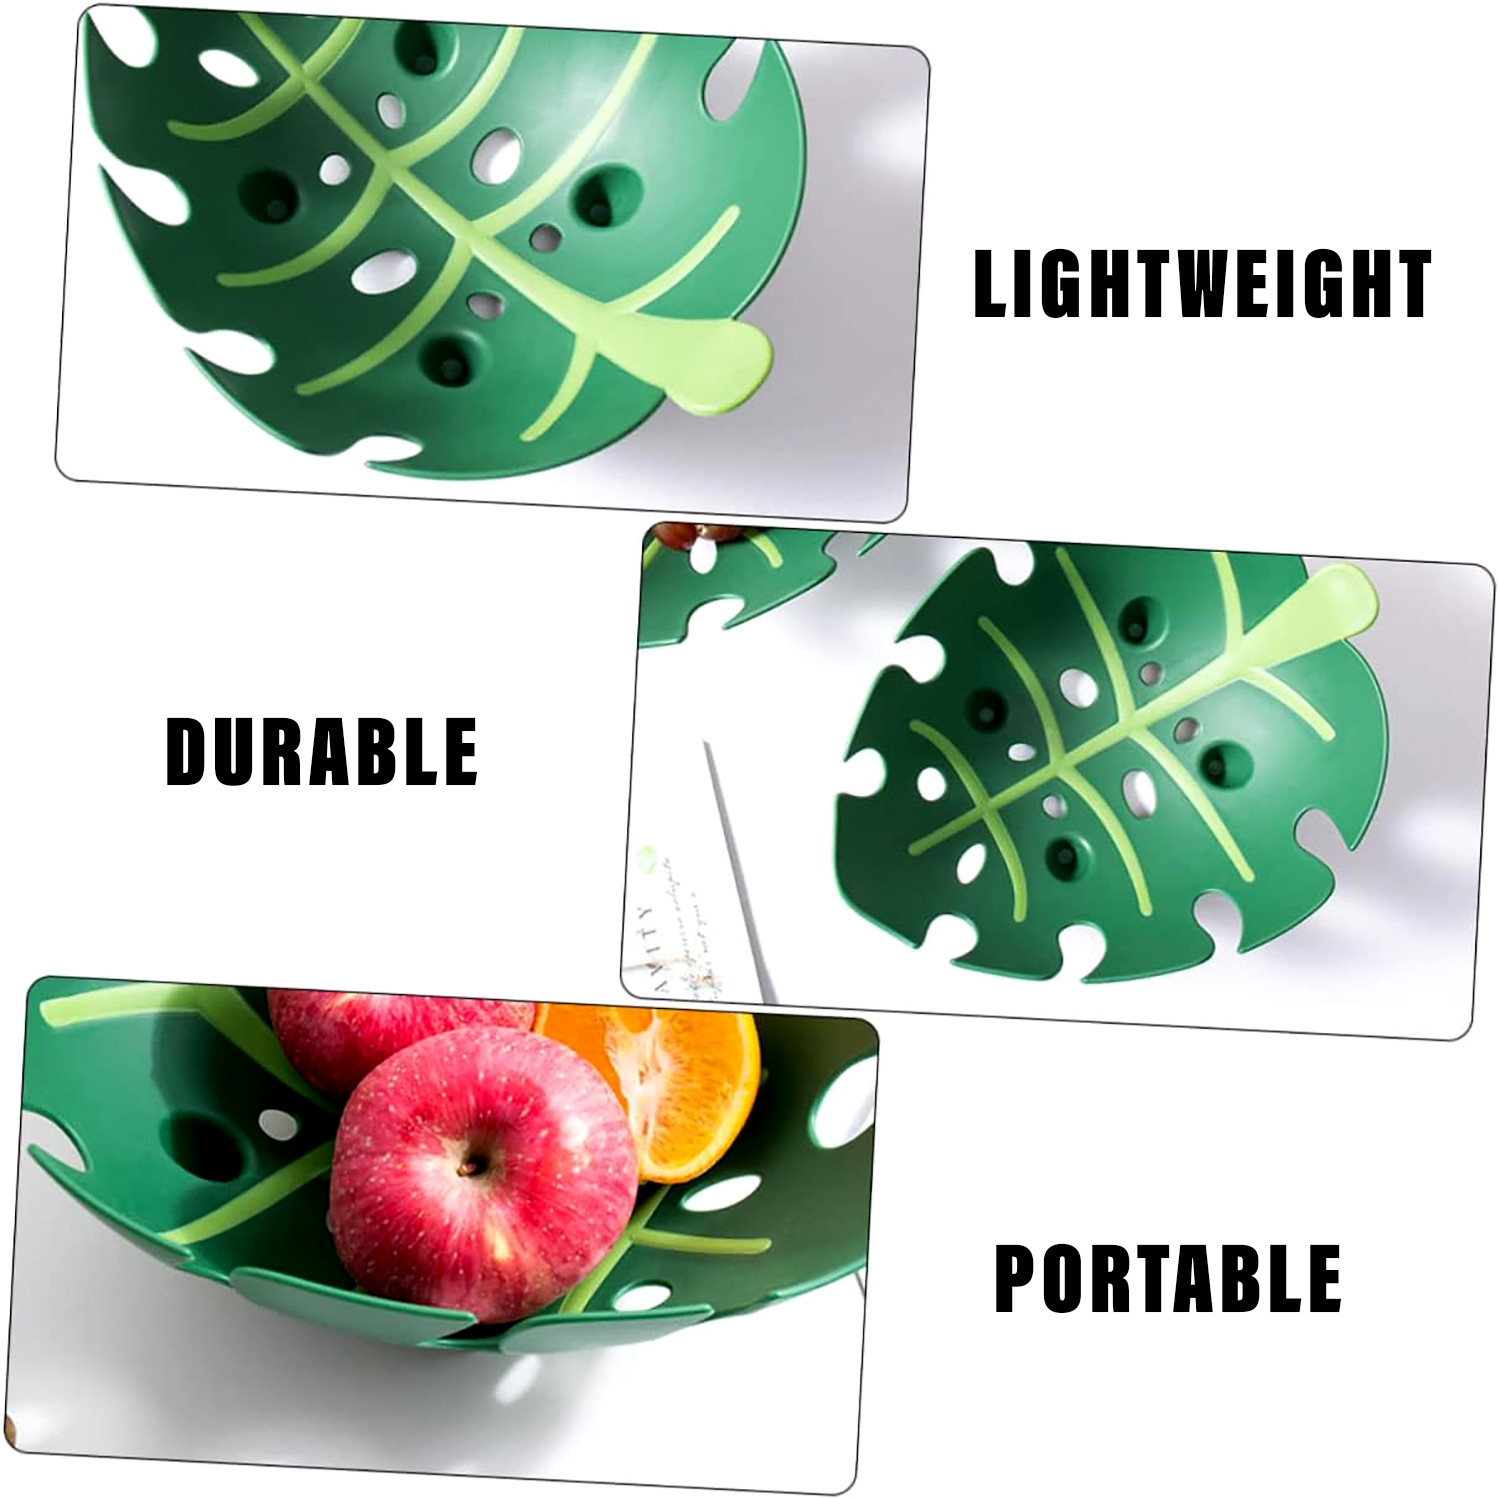 Kuber Industries Basket | Fruit Storage Basket | Basket for Home-Kitchen-Dining Table | Vegetable-Fruit Strainer Basket | Multipurpose Fruit Bowl Tray | Leaf Shape Basket | Green